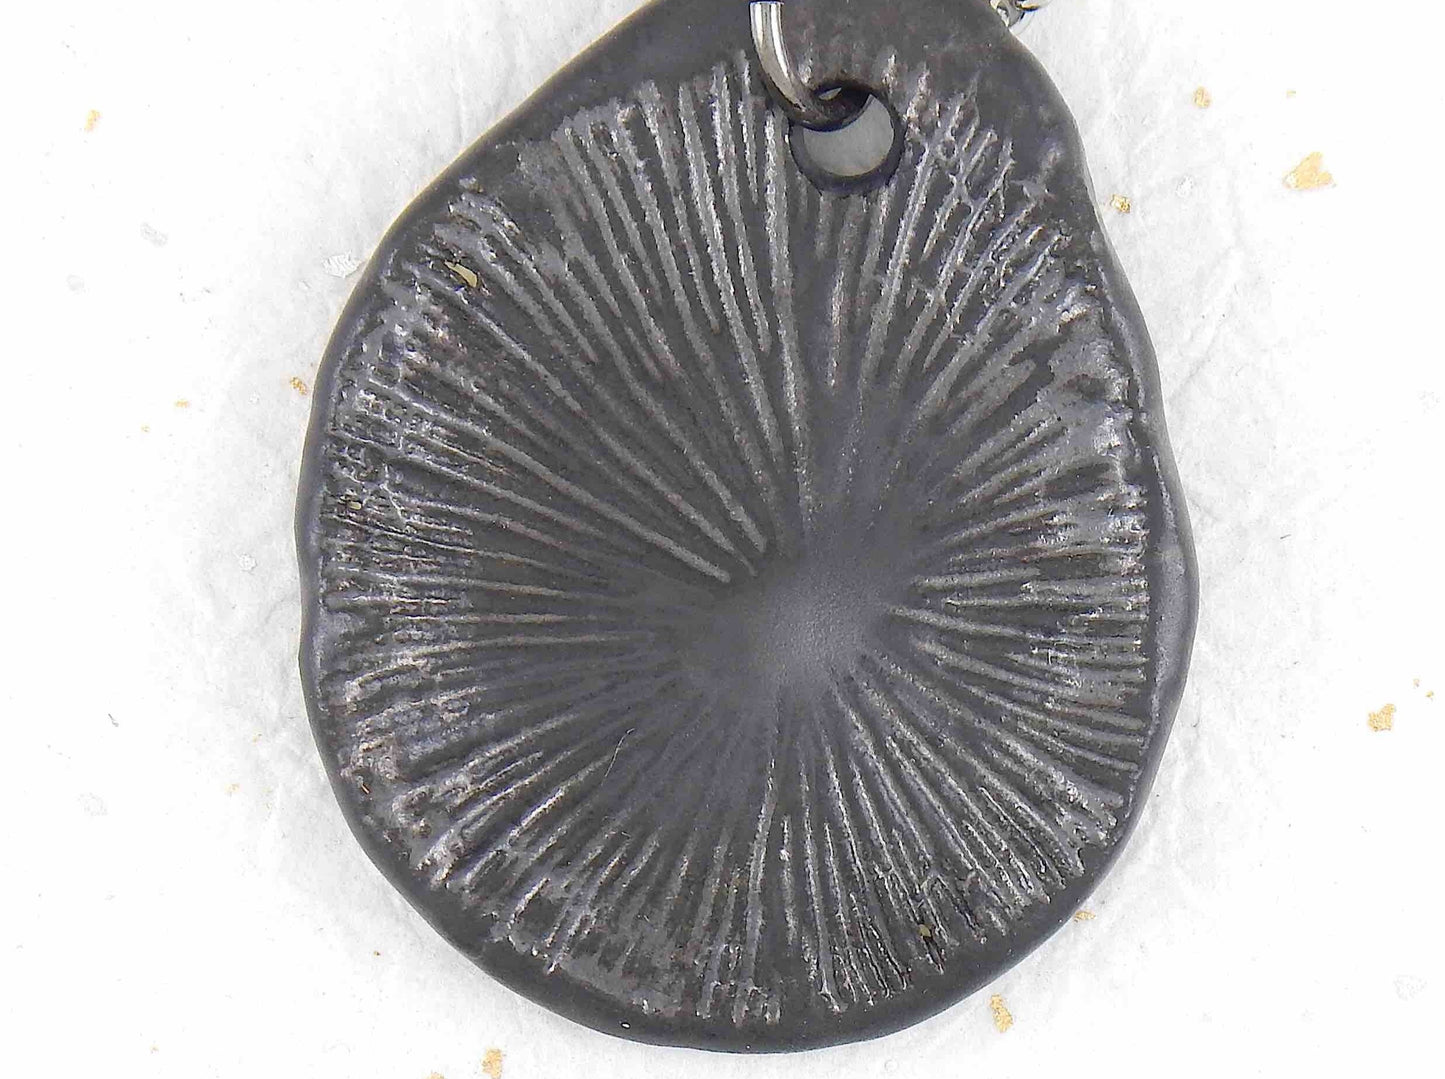 Collier 20 po à pendentif corail de faïence nickel noir fait à la main à Montréal, chaîne acier inoxydable